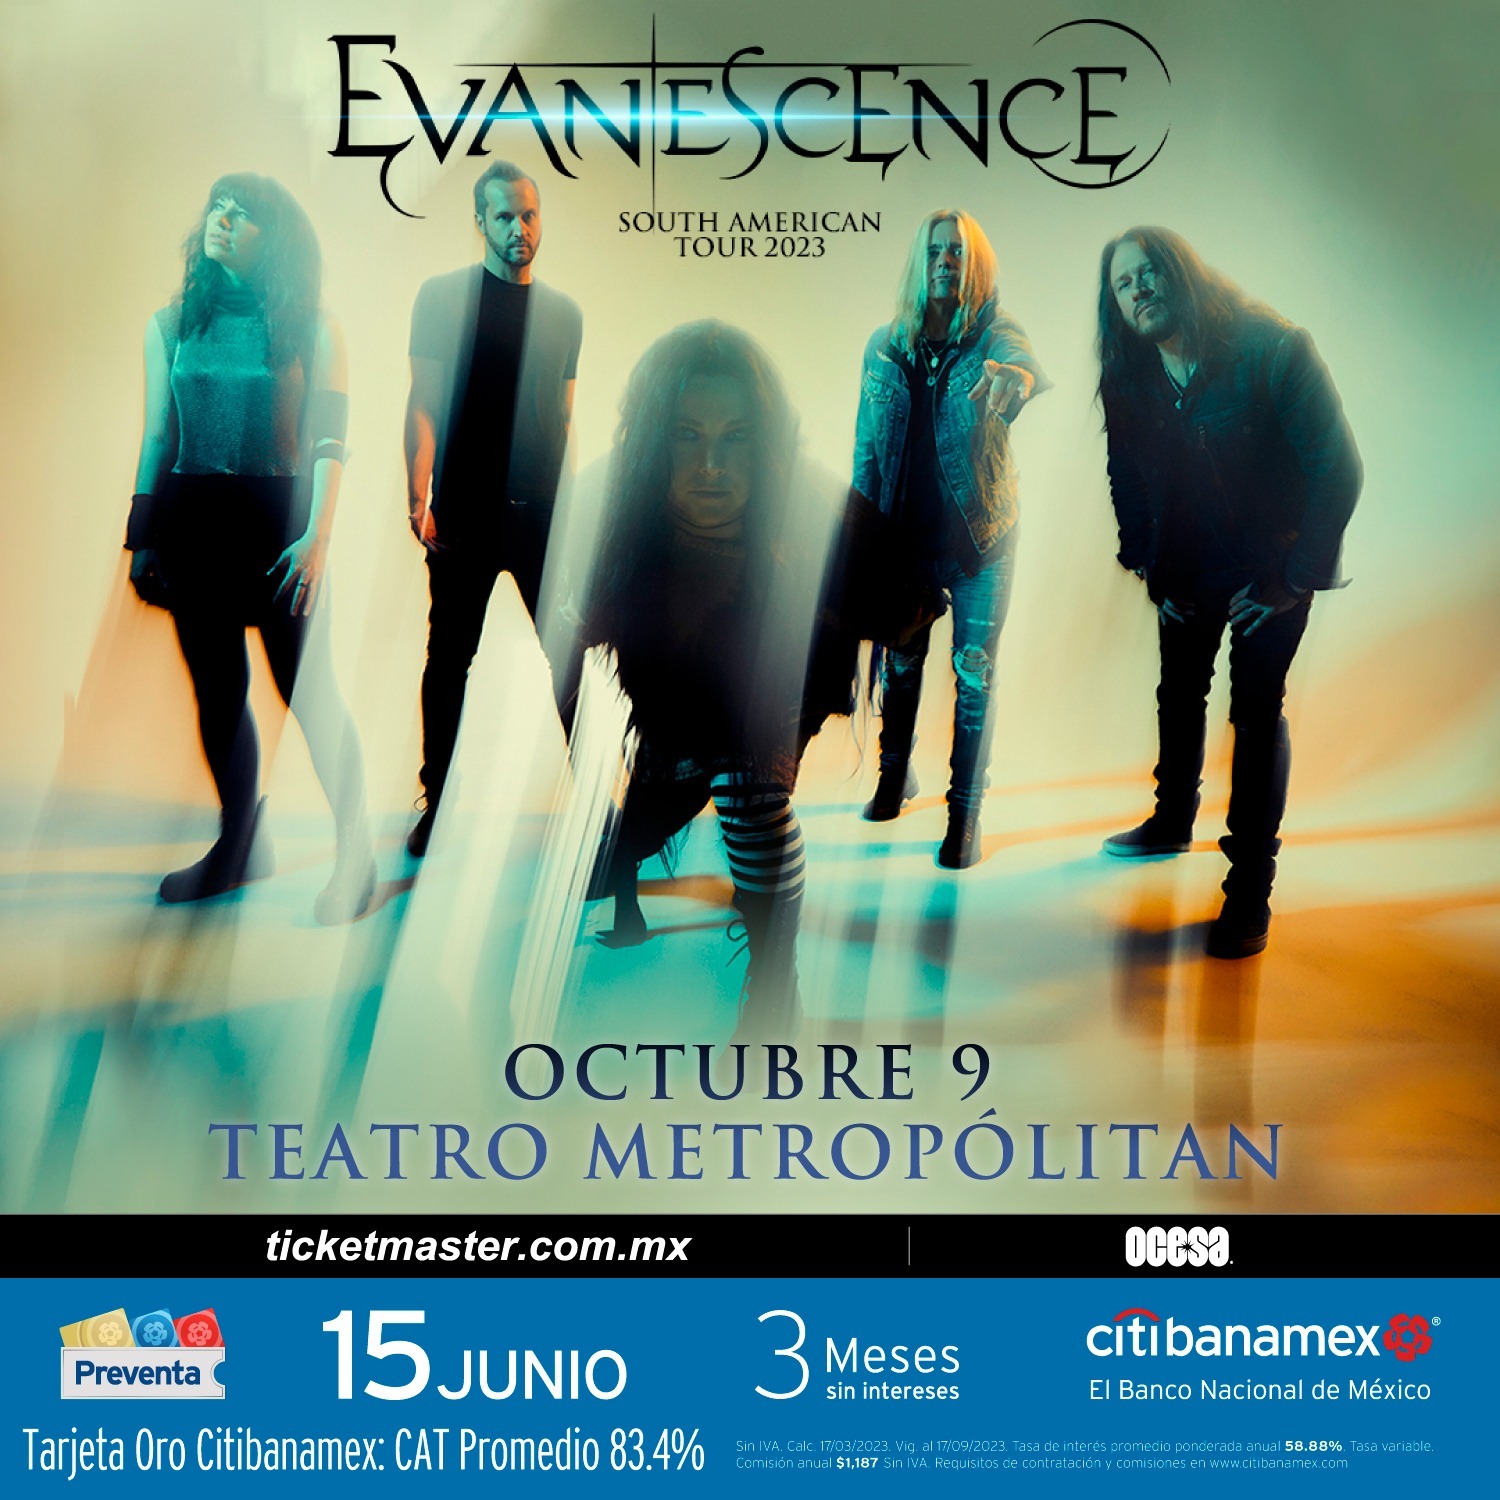 Evanescence anuncia concierto en CDMX en Teatro Metropólitan fechas